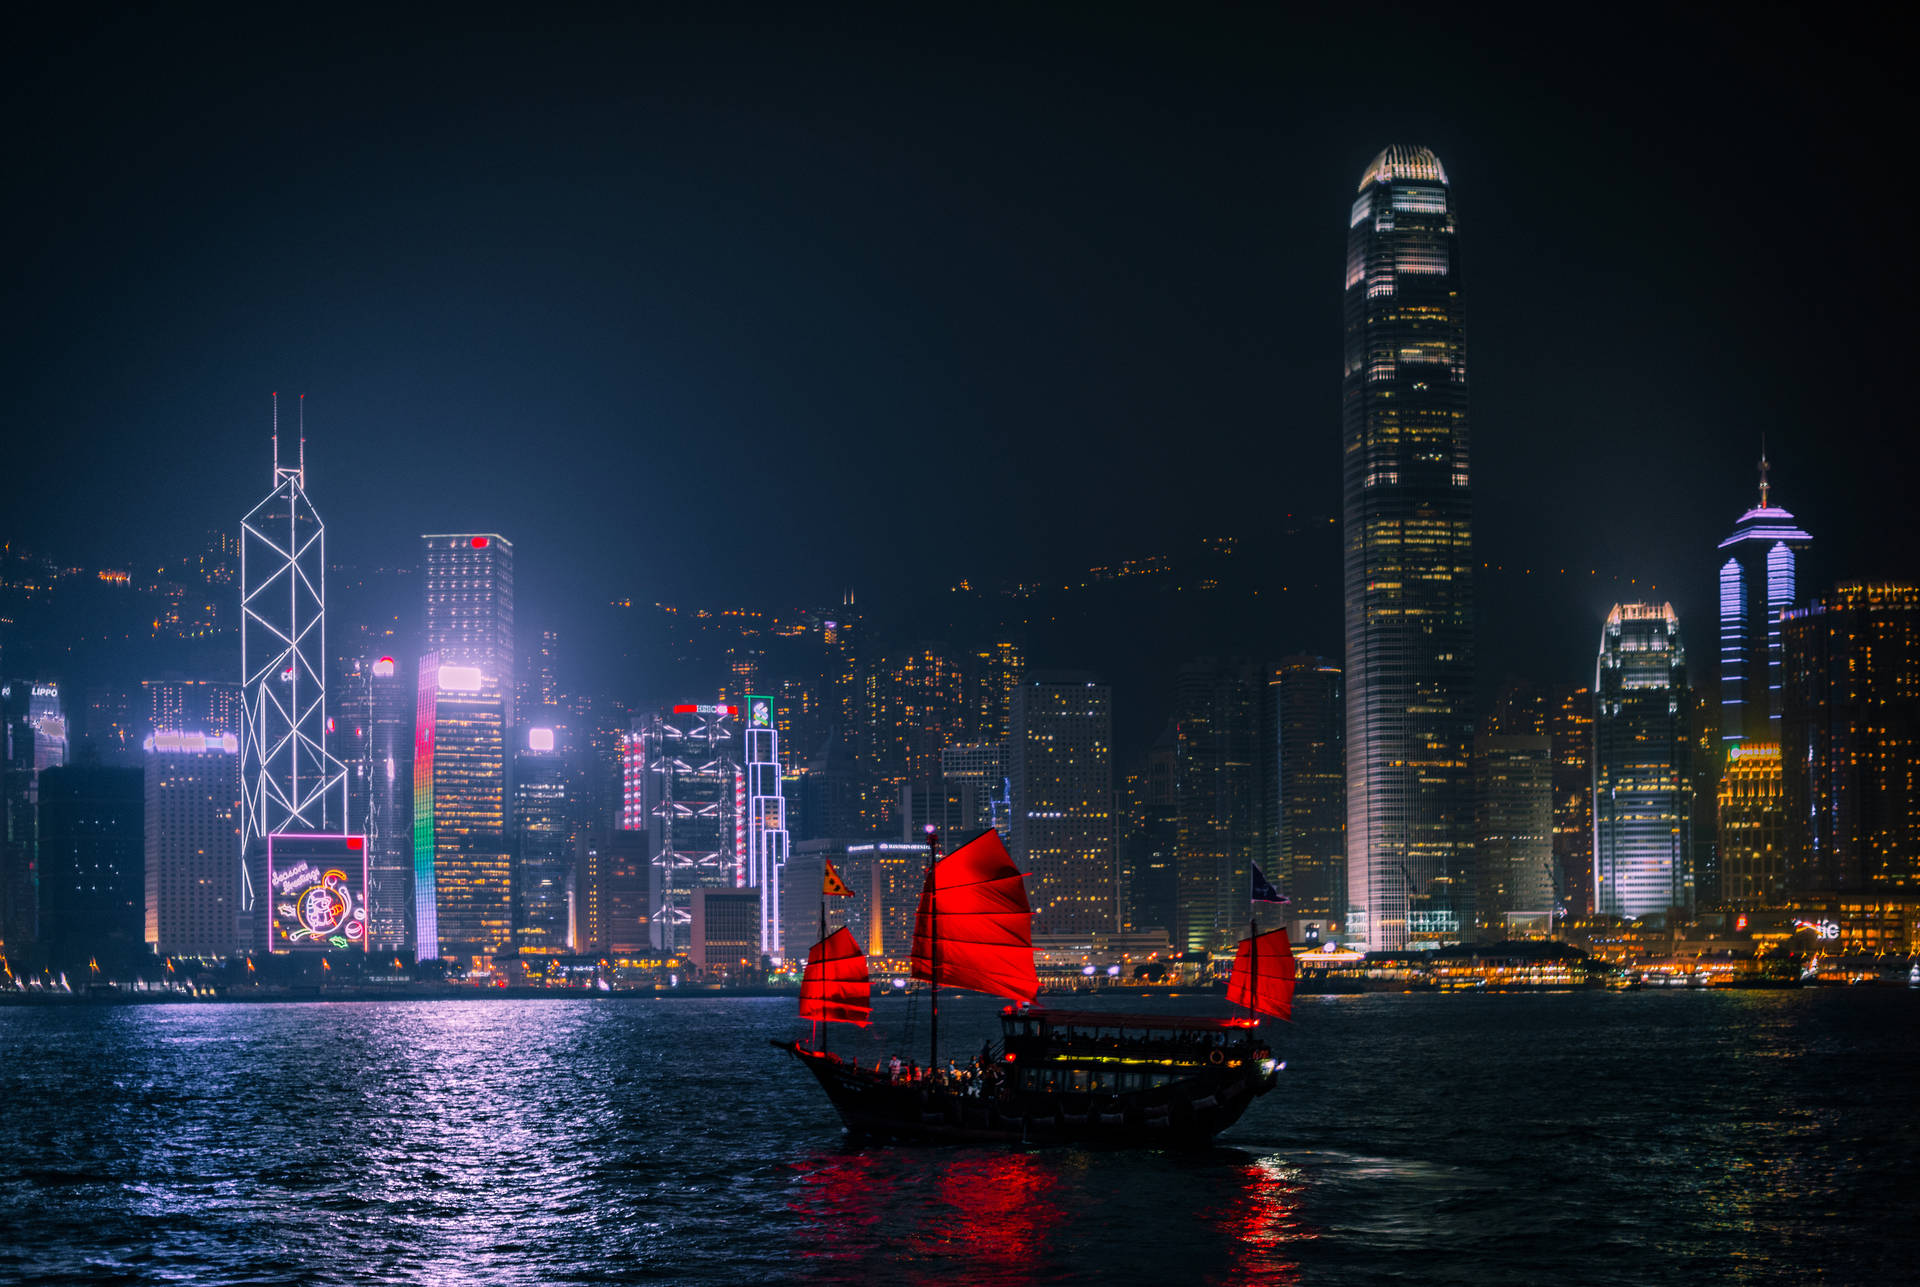 Tải ngay hình nền Hồng Kông miễn phí để cảm nhận vẻ đẹp độc đáo của thành phố tân tiến này. Những hình ảnh tuyệt đẹp sẽ khiến cho màn hình của bạn thêm phần sống động và đậm chất Châu Á.